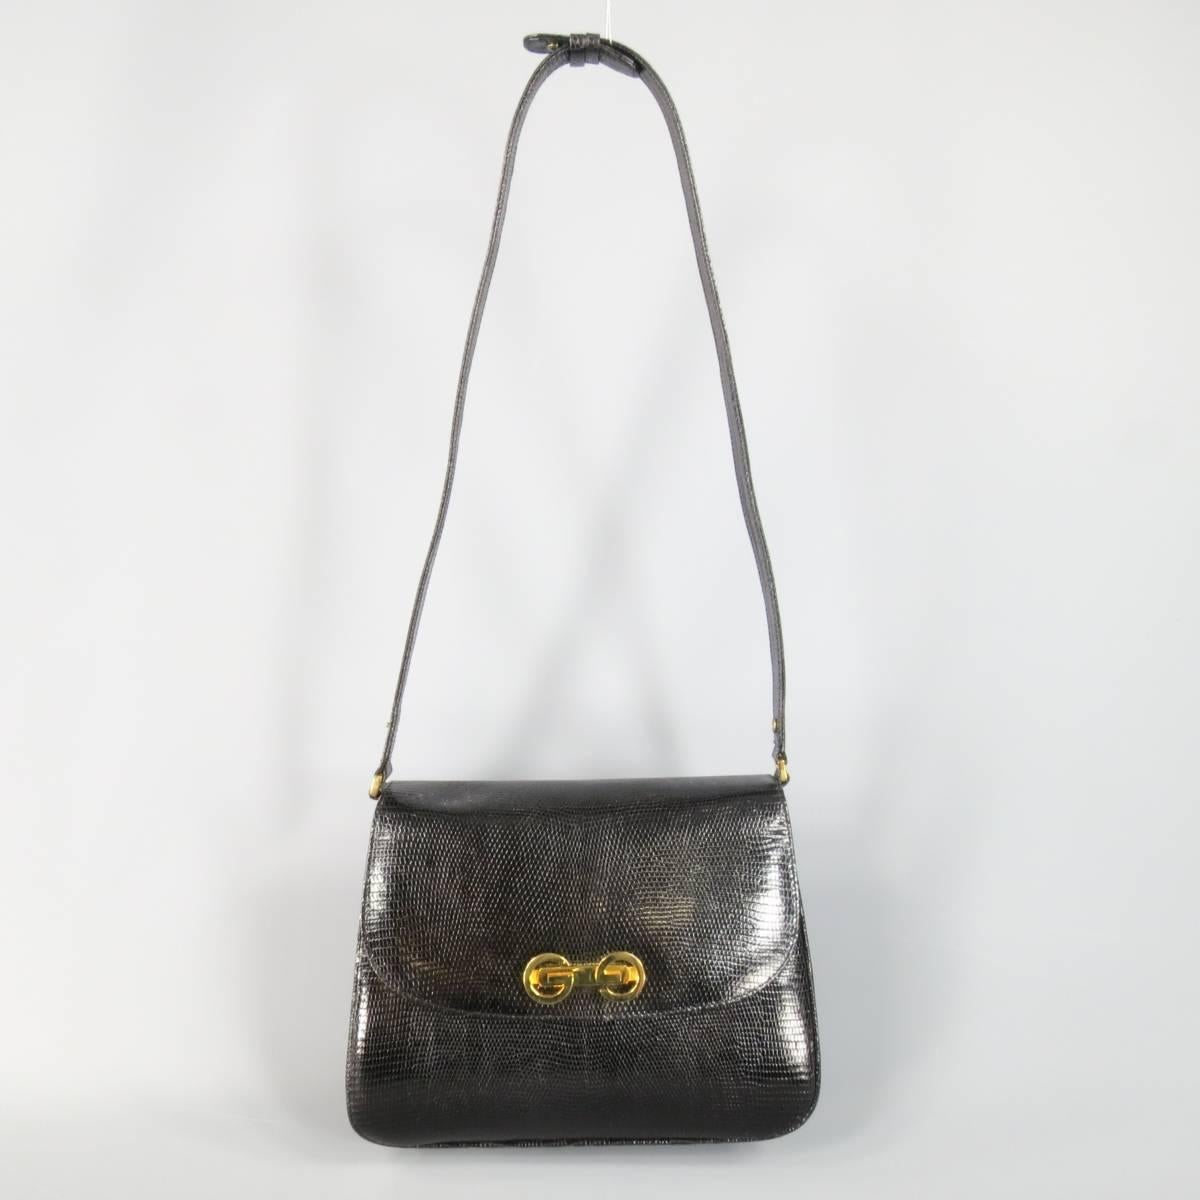 Vintage GUCCI Black Lizard Skin Leather Gold G Handbag 1